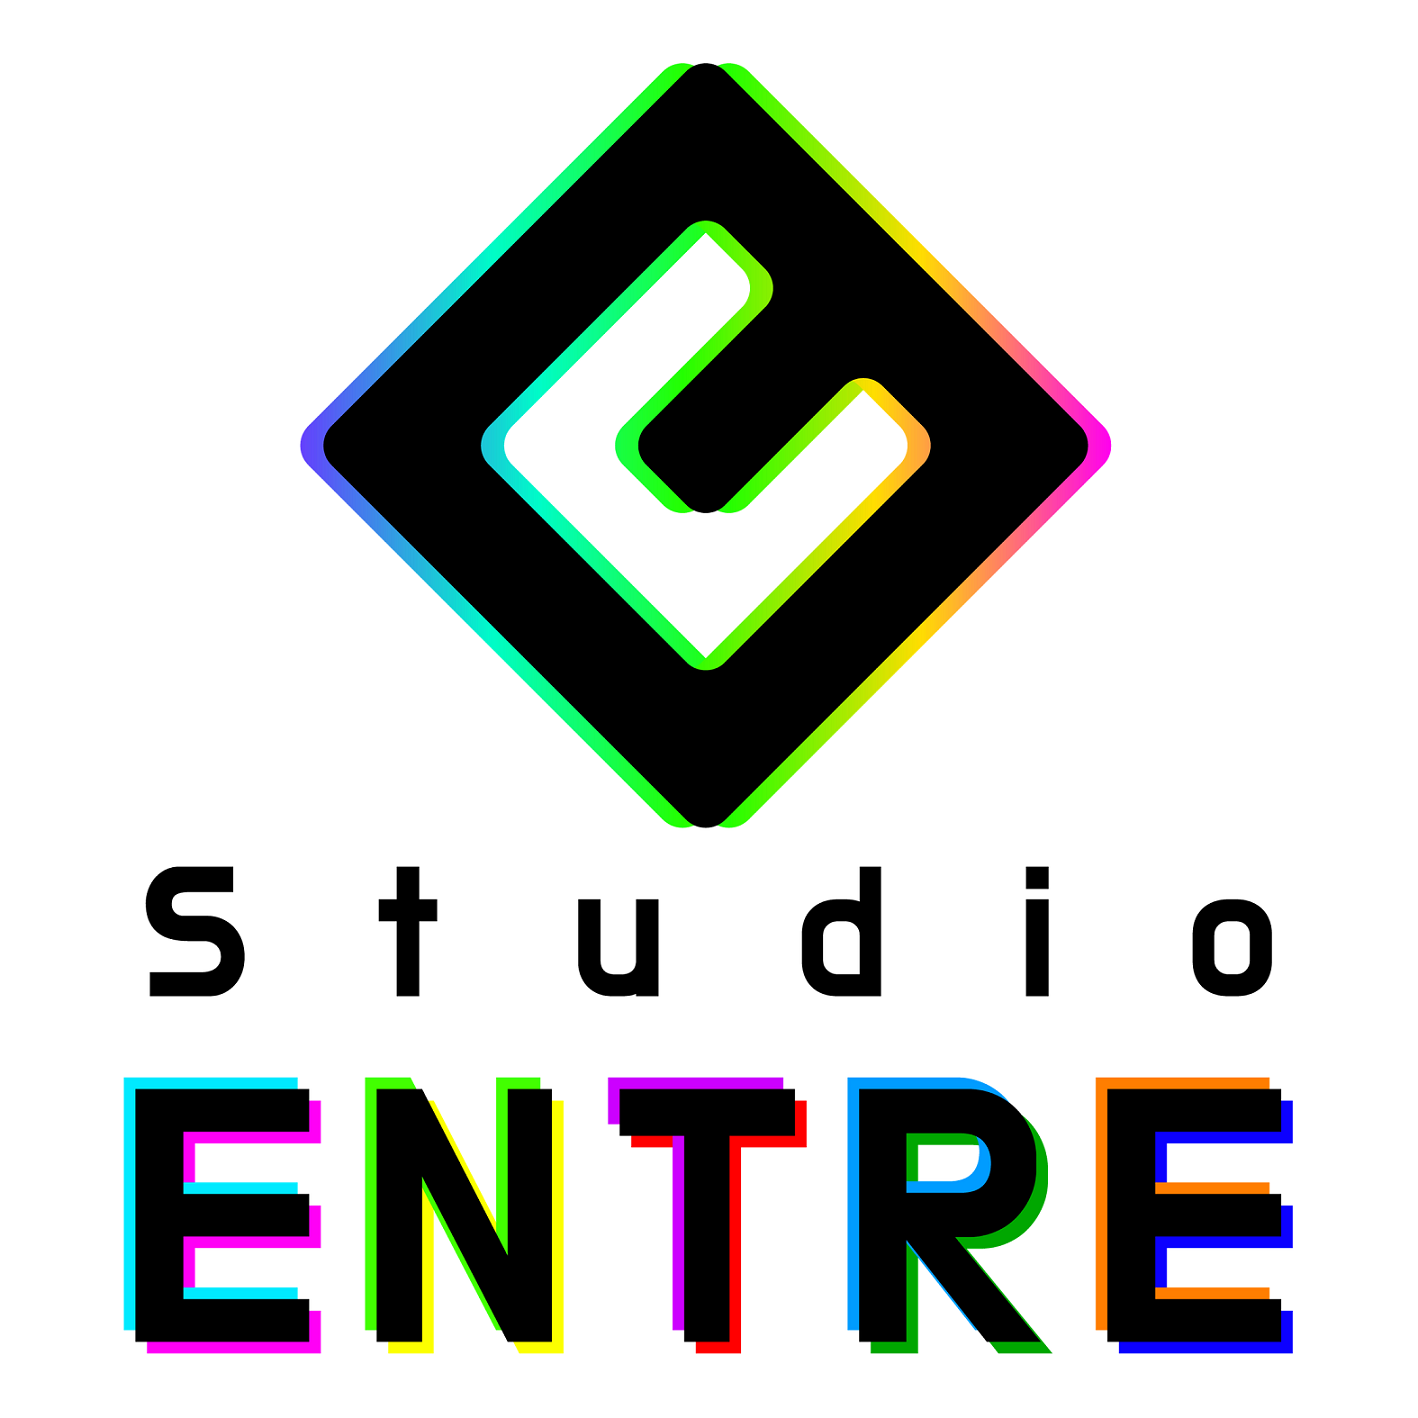 Studio ENTRE株式会社